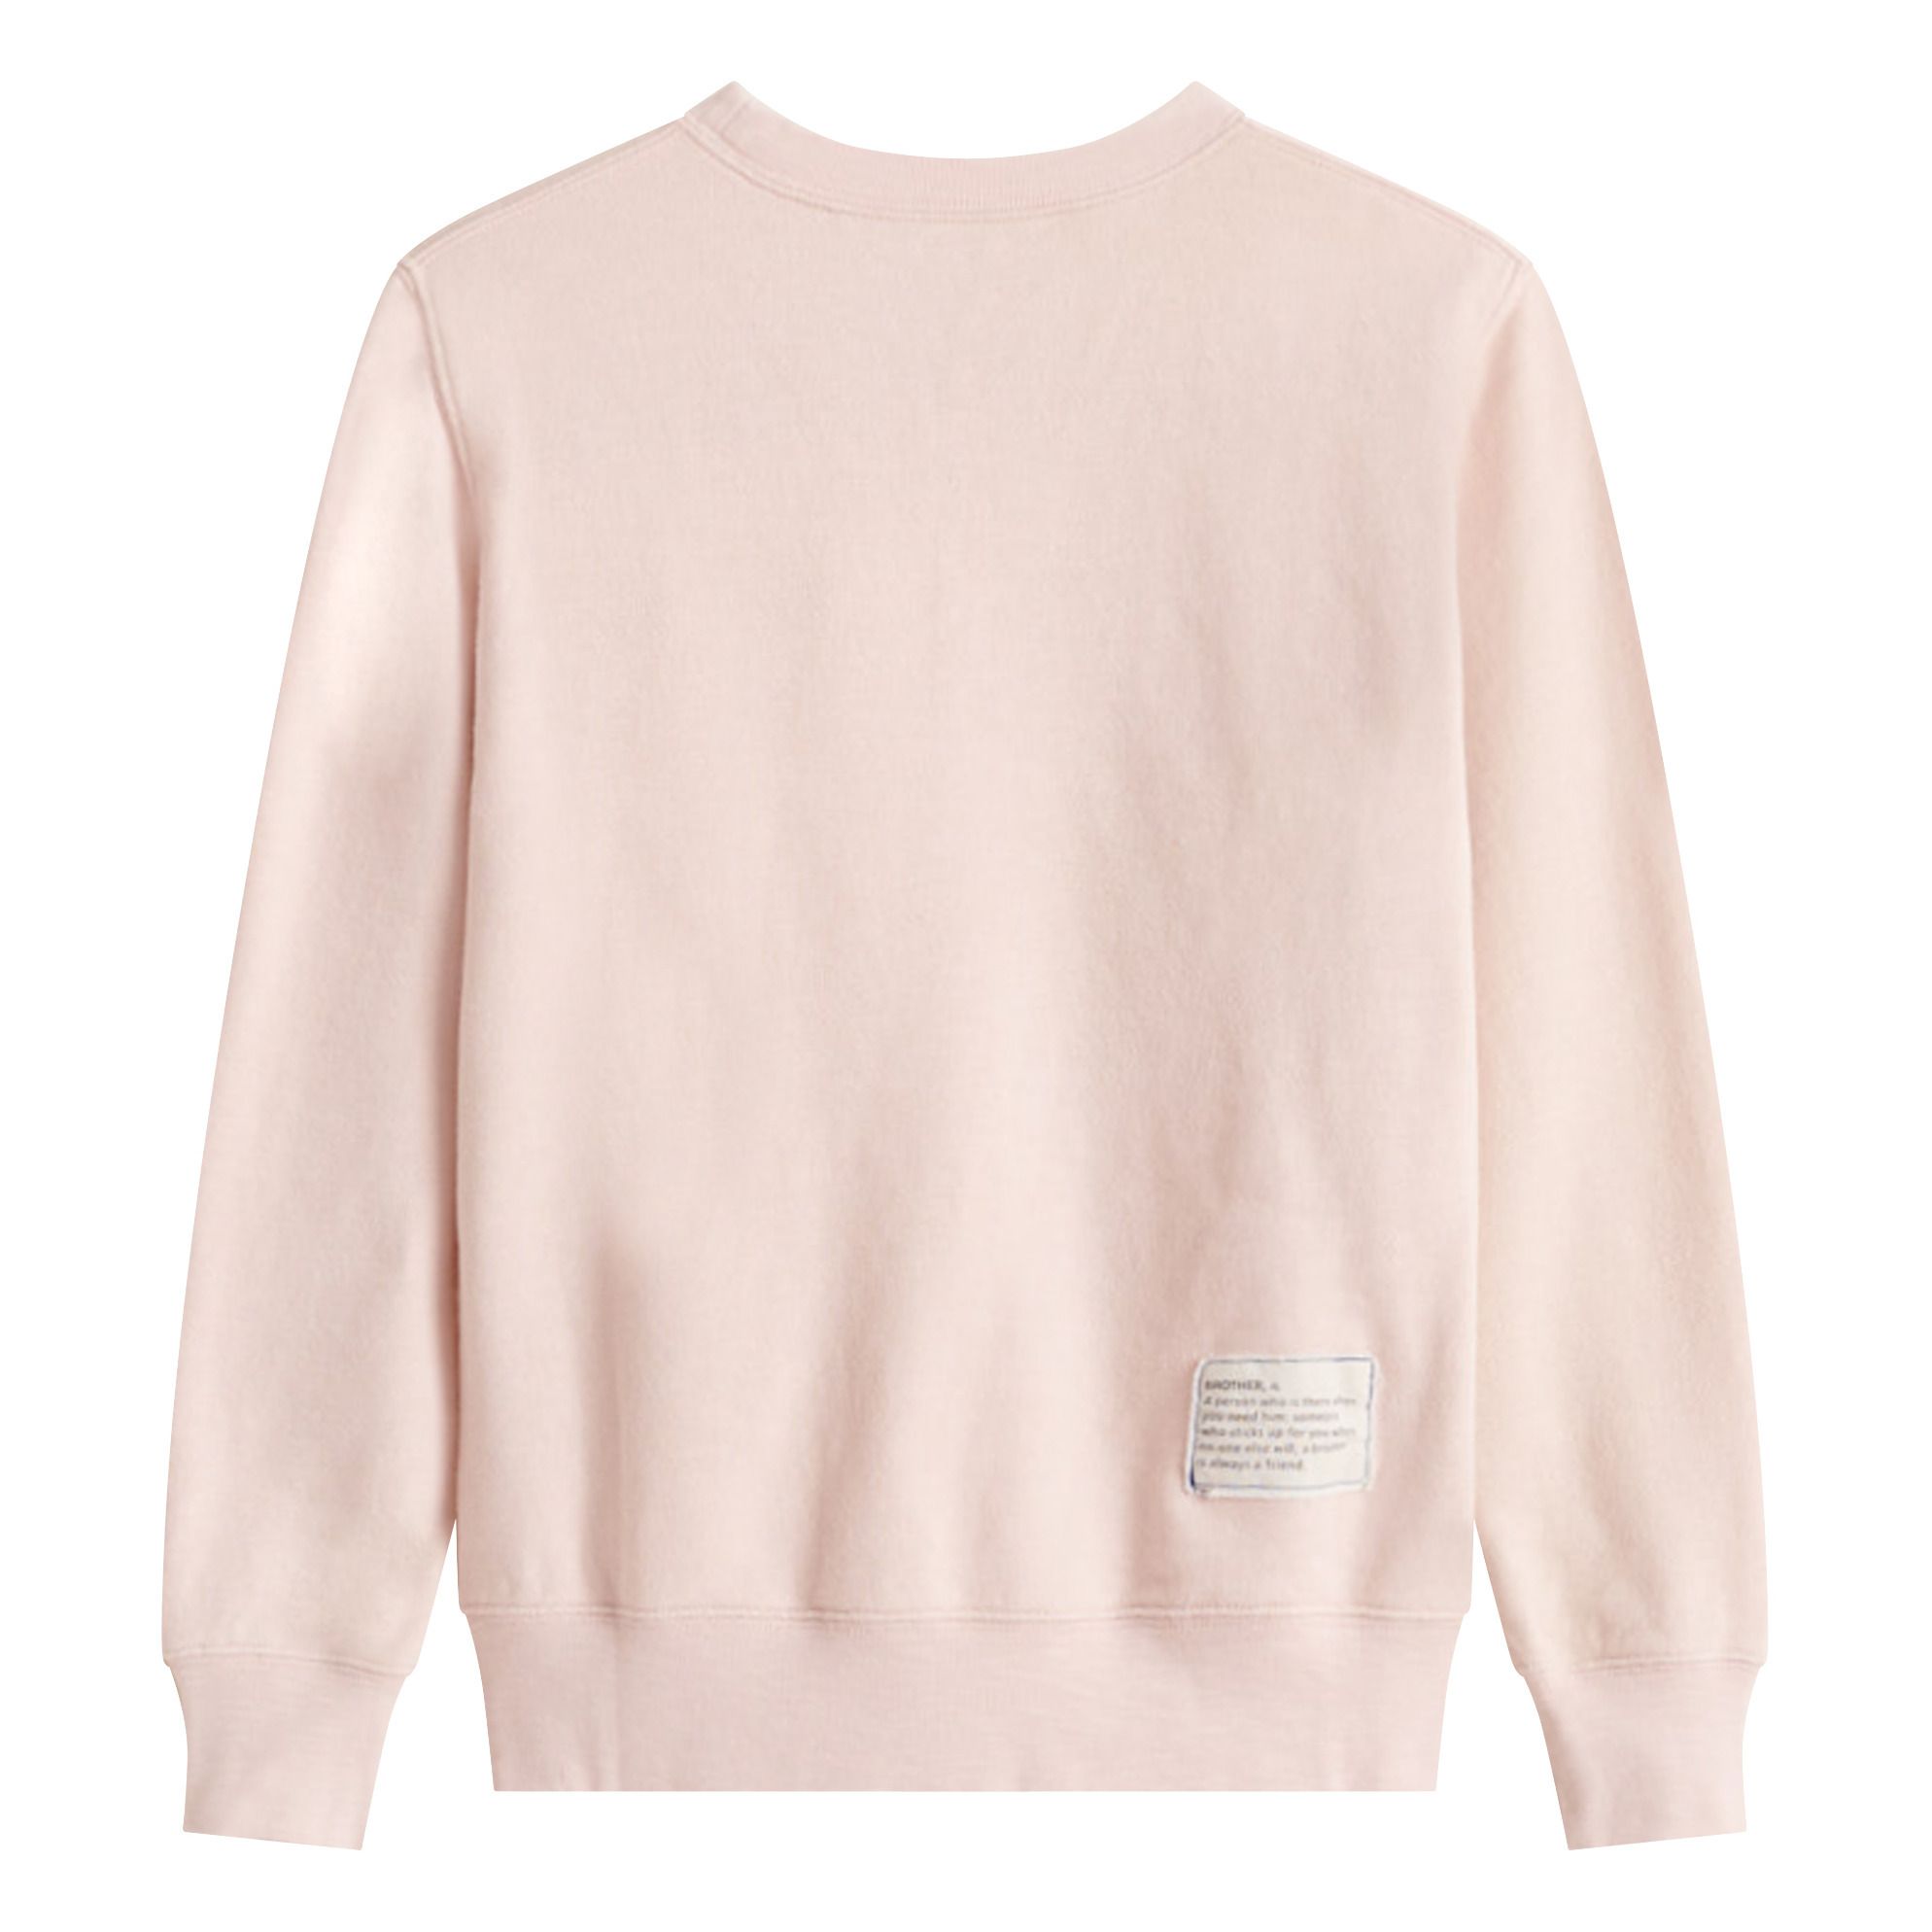 Fax Kangaroo Pocket Sweatshirt Powder pink Bellerose Fashion Teen